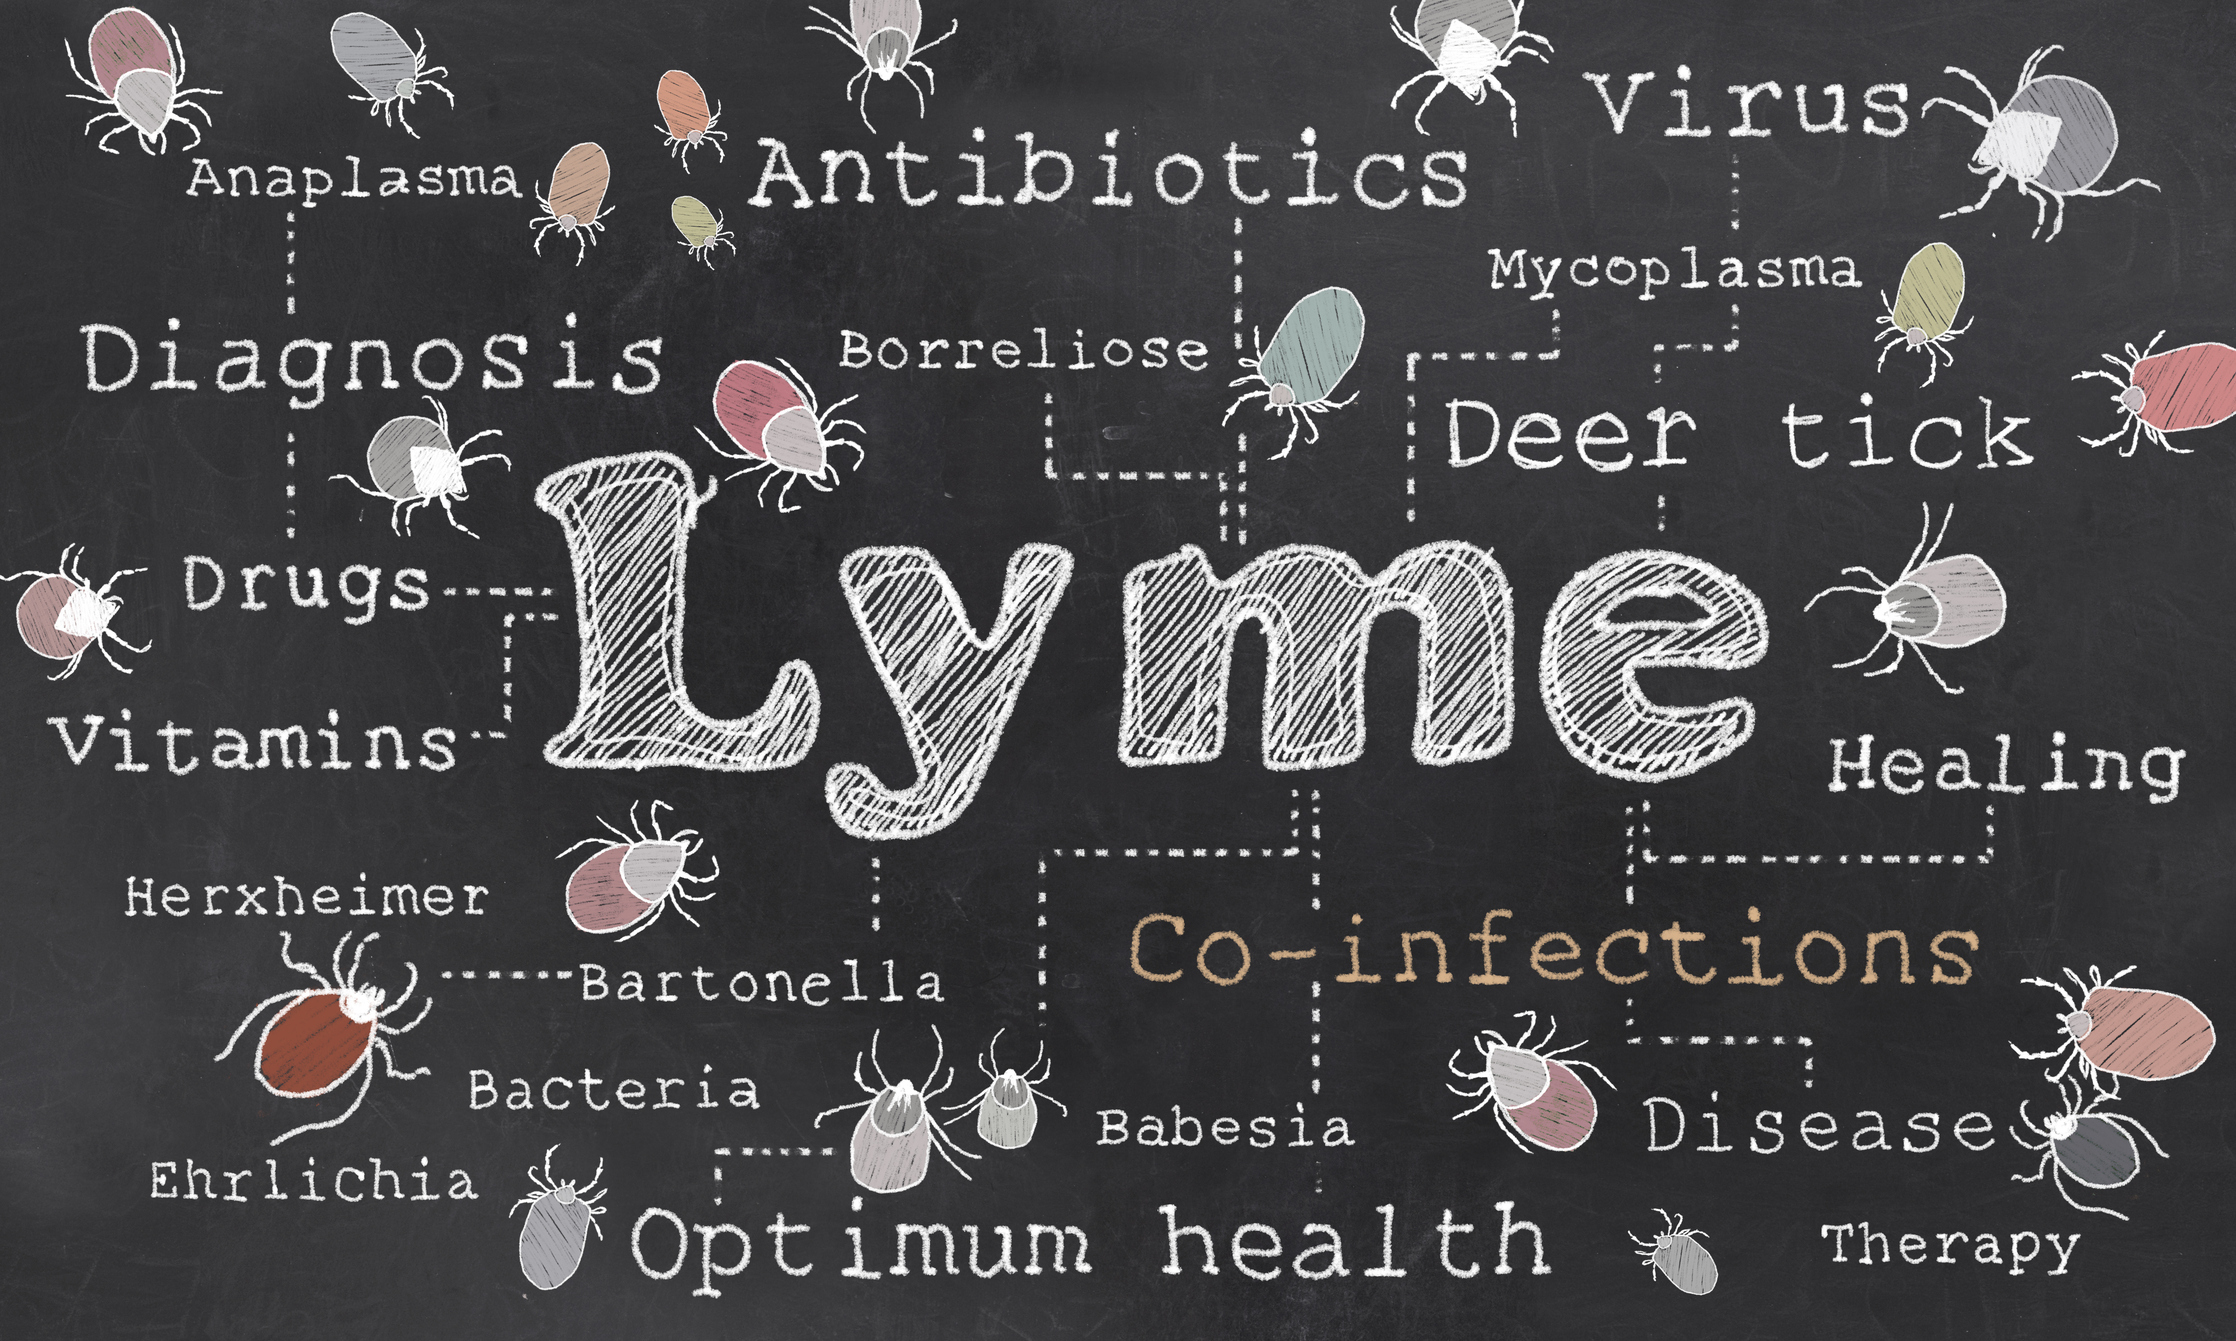 Lyme disease can be detected ear...